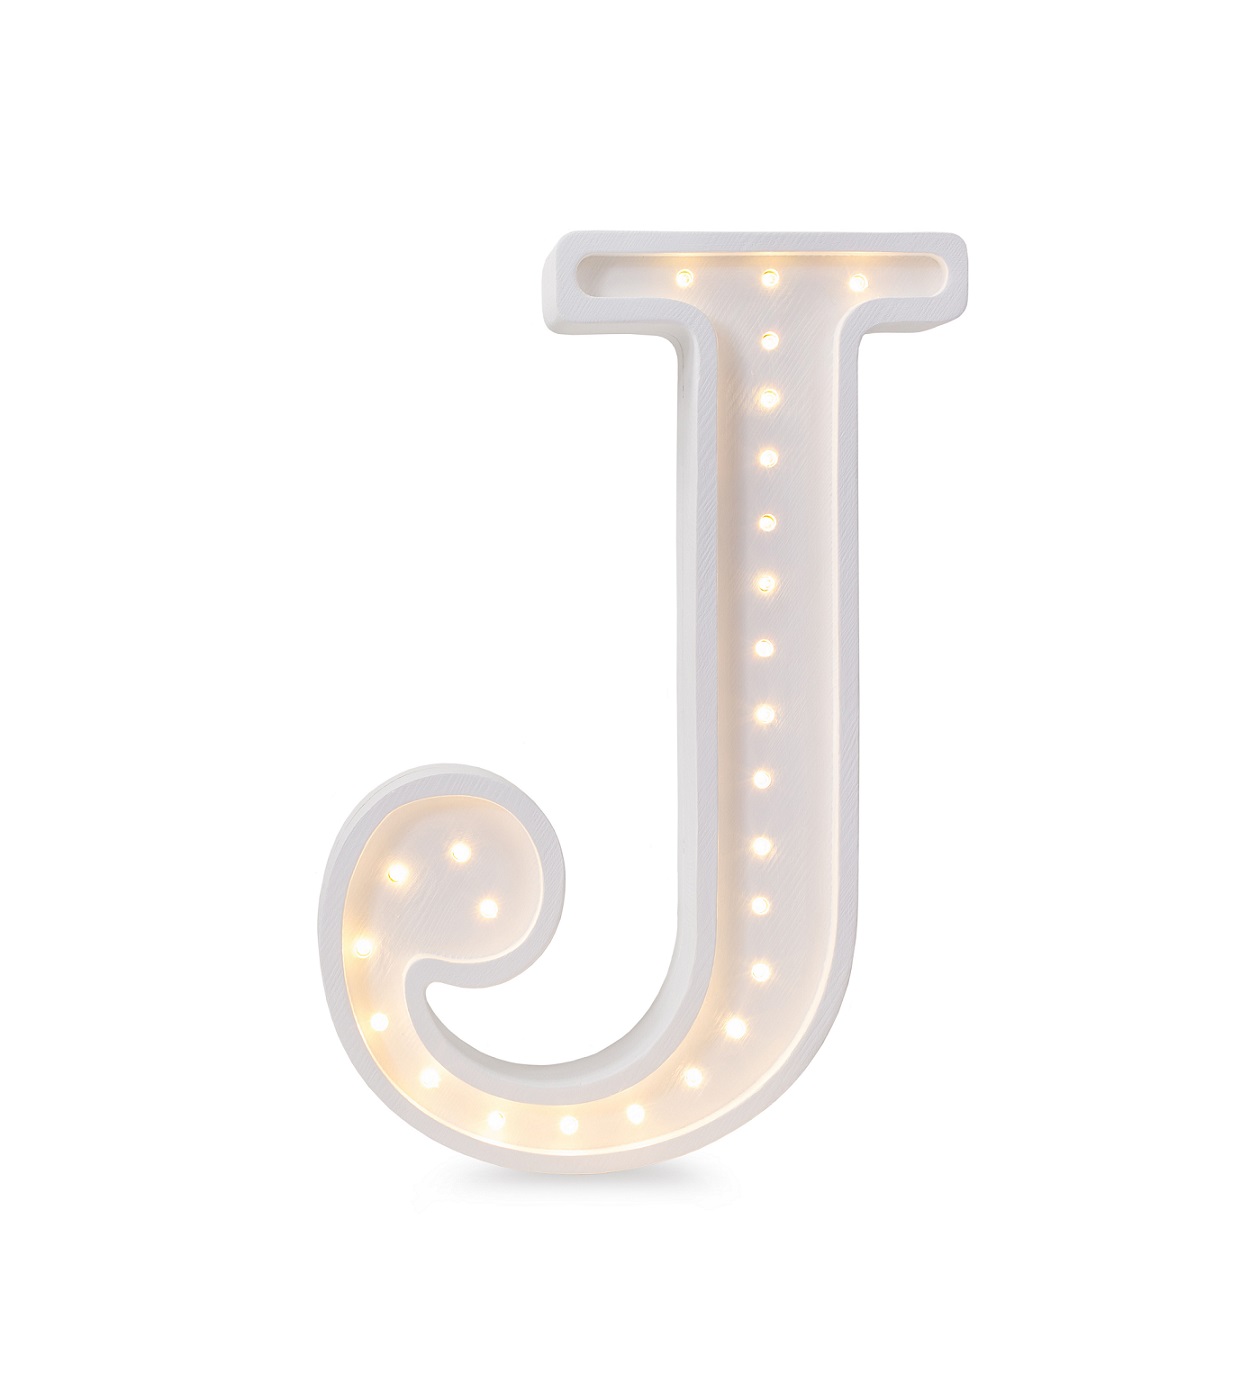 Night light for children's room letter J lamp, Little Lights 